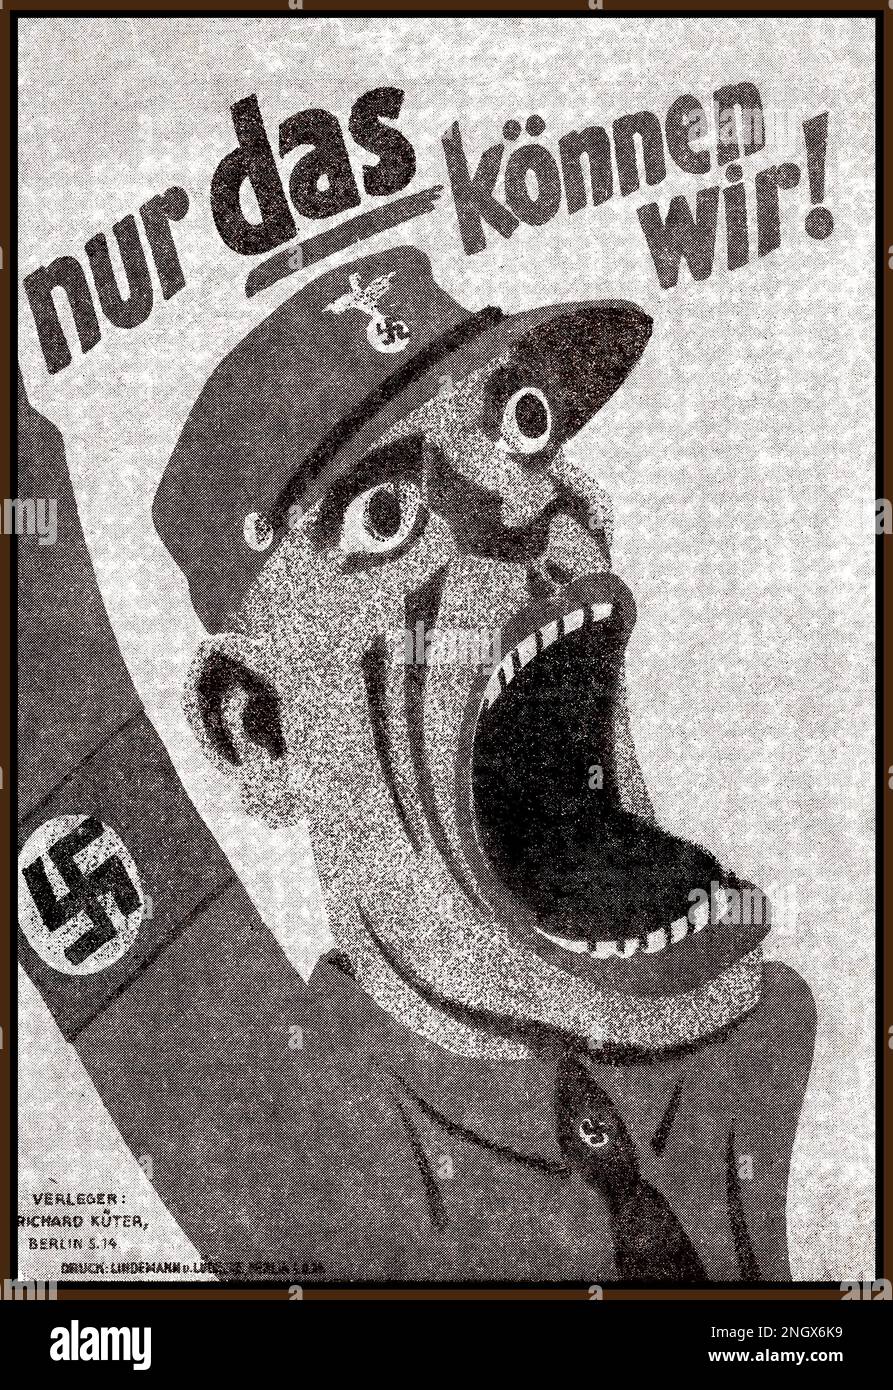 Nazi 1930s Sturmabteilung propagande carte d'affiche "c'est tout ce que nous pouvons faire" ( nur das können wir) avec un soldat paramilitaire avec le brassard et le chapeau de swastika, caricature de dessin animé criant sa phrase de recrutement. Allemagne nazie 1930s Banque D'Images